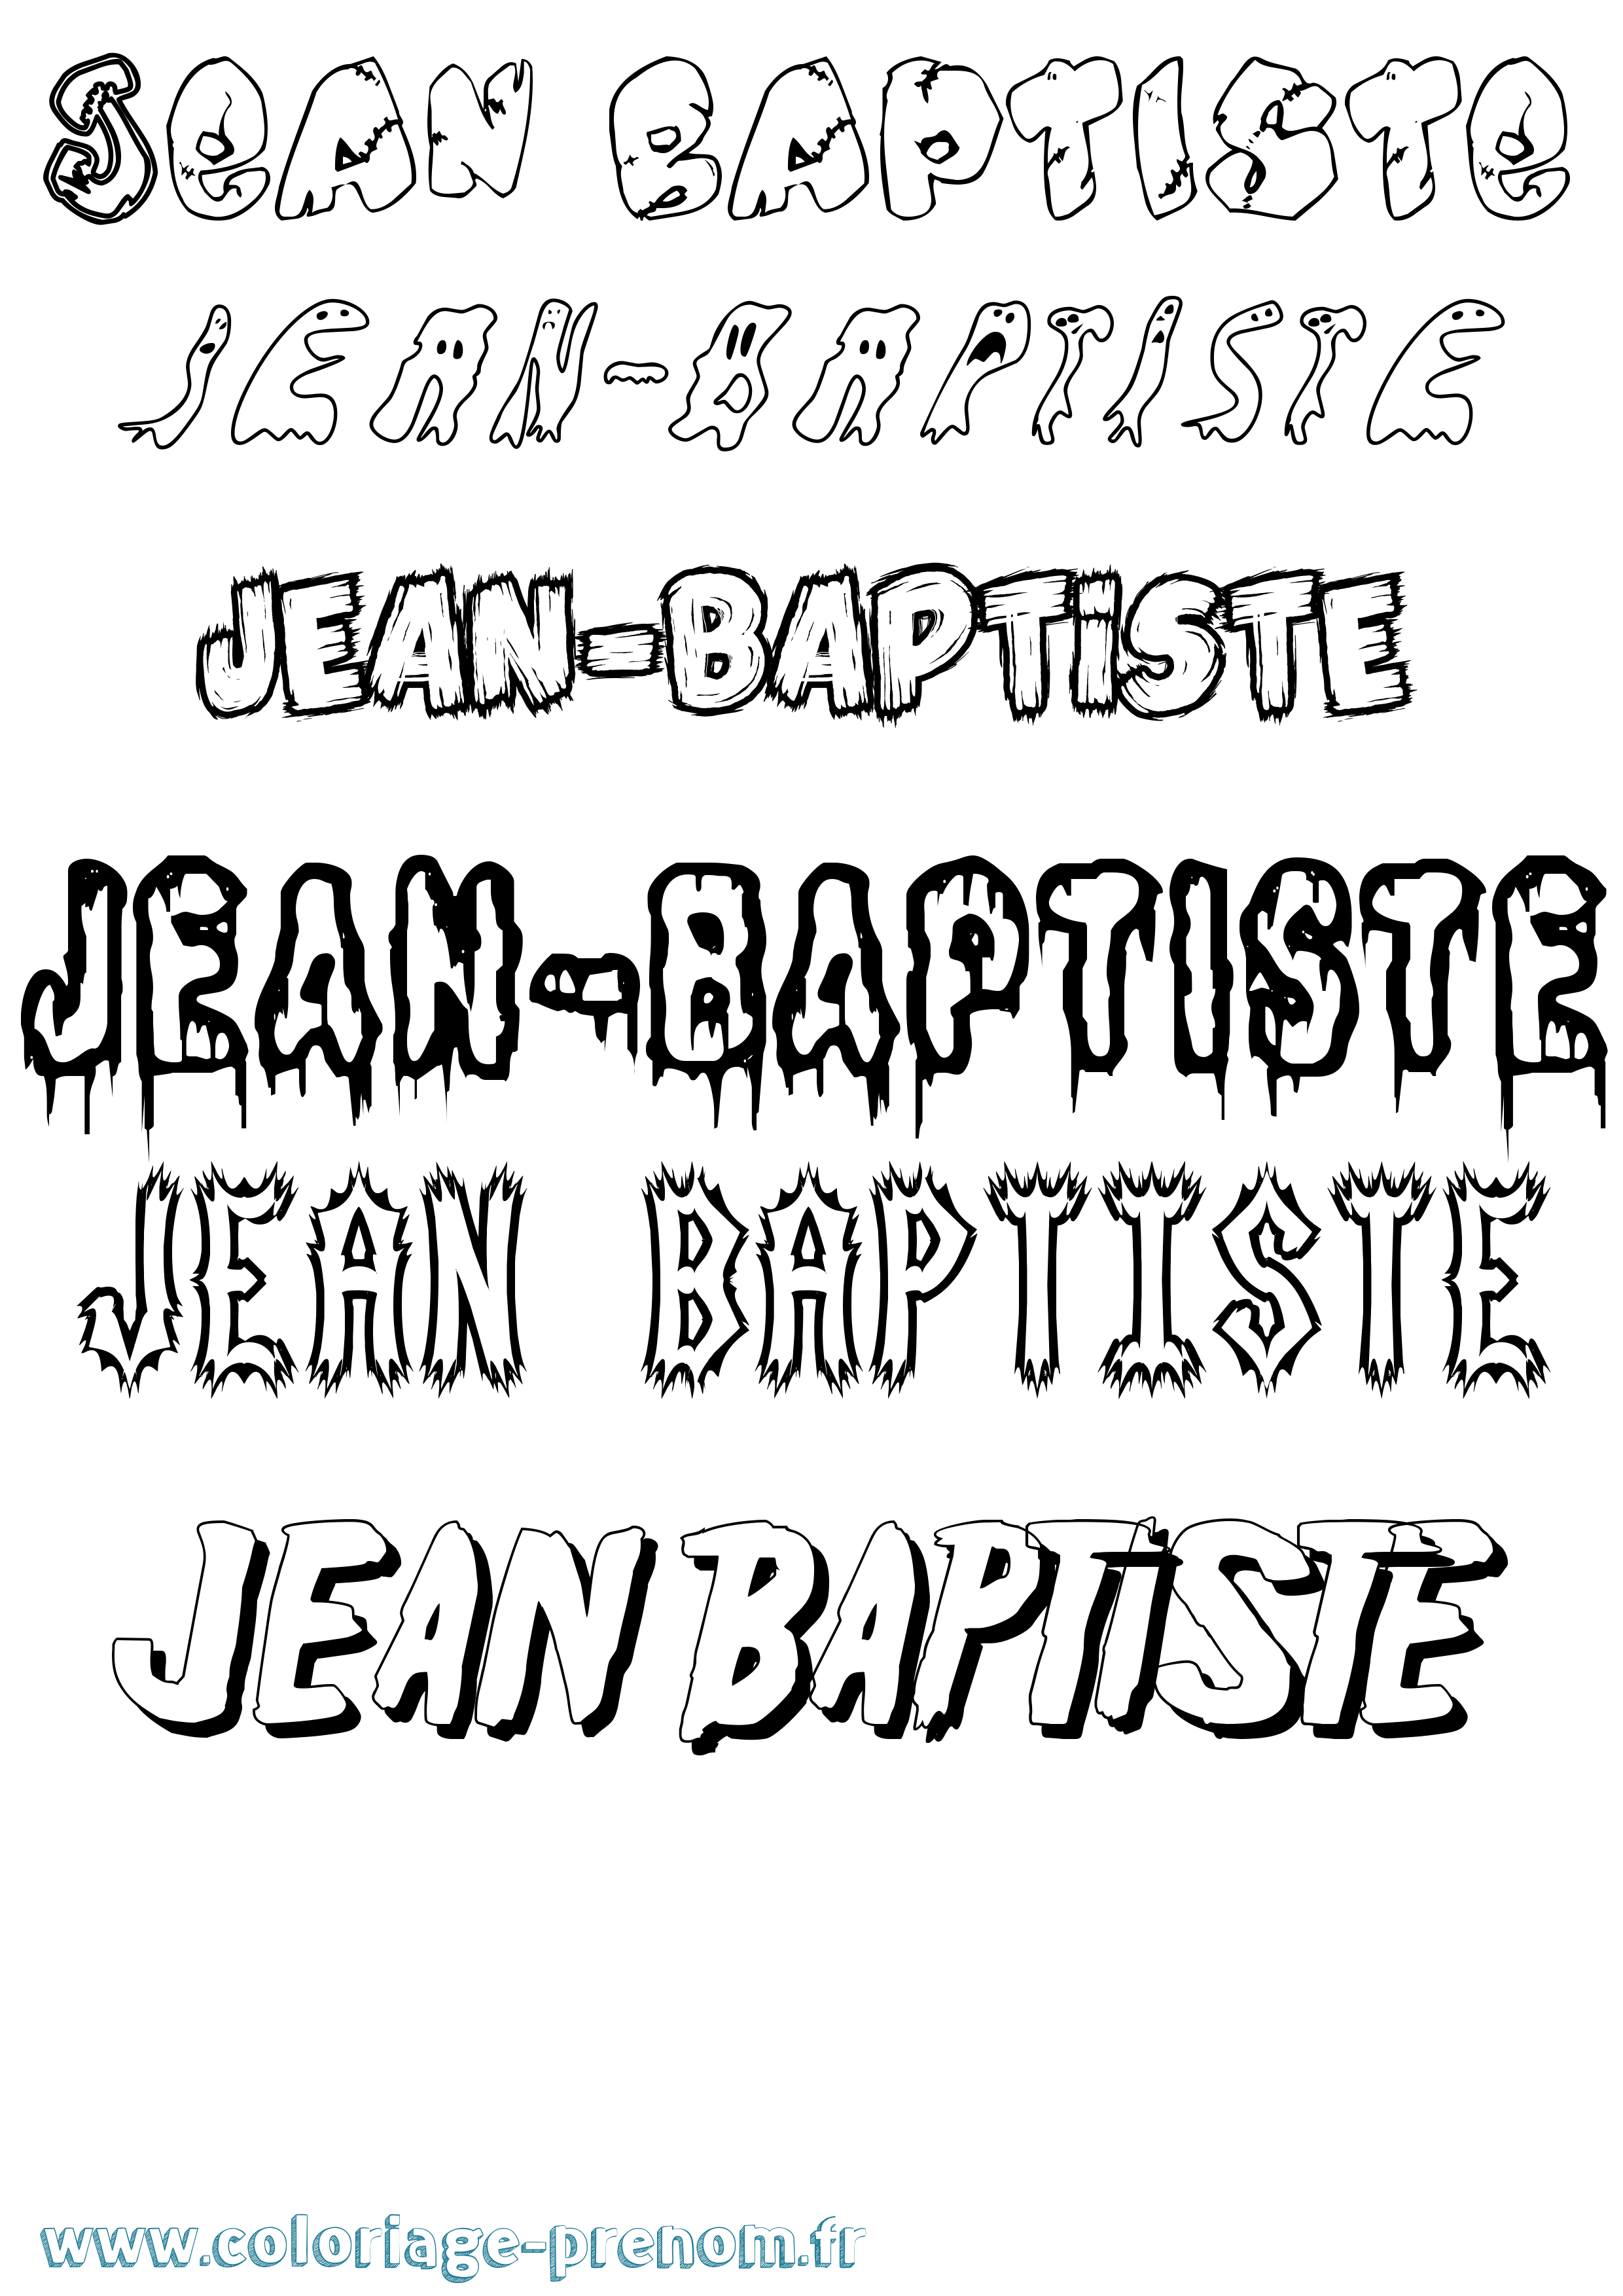 Coloriage prénom Jean-Baptiste